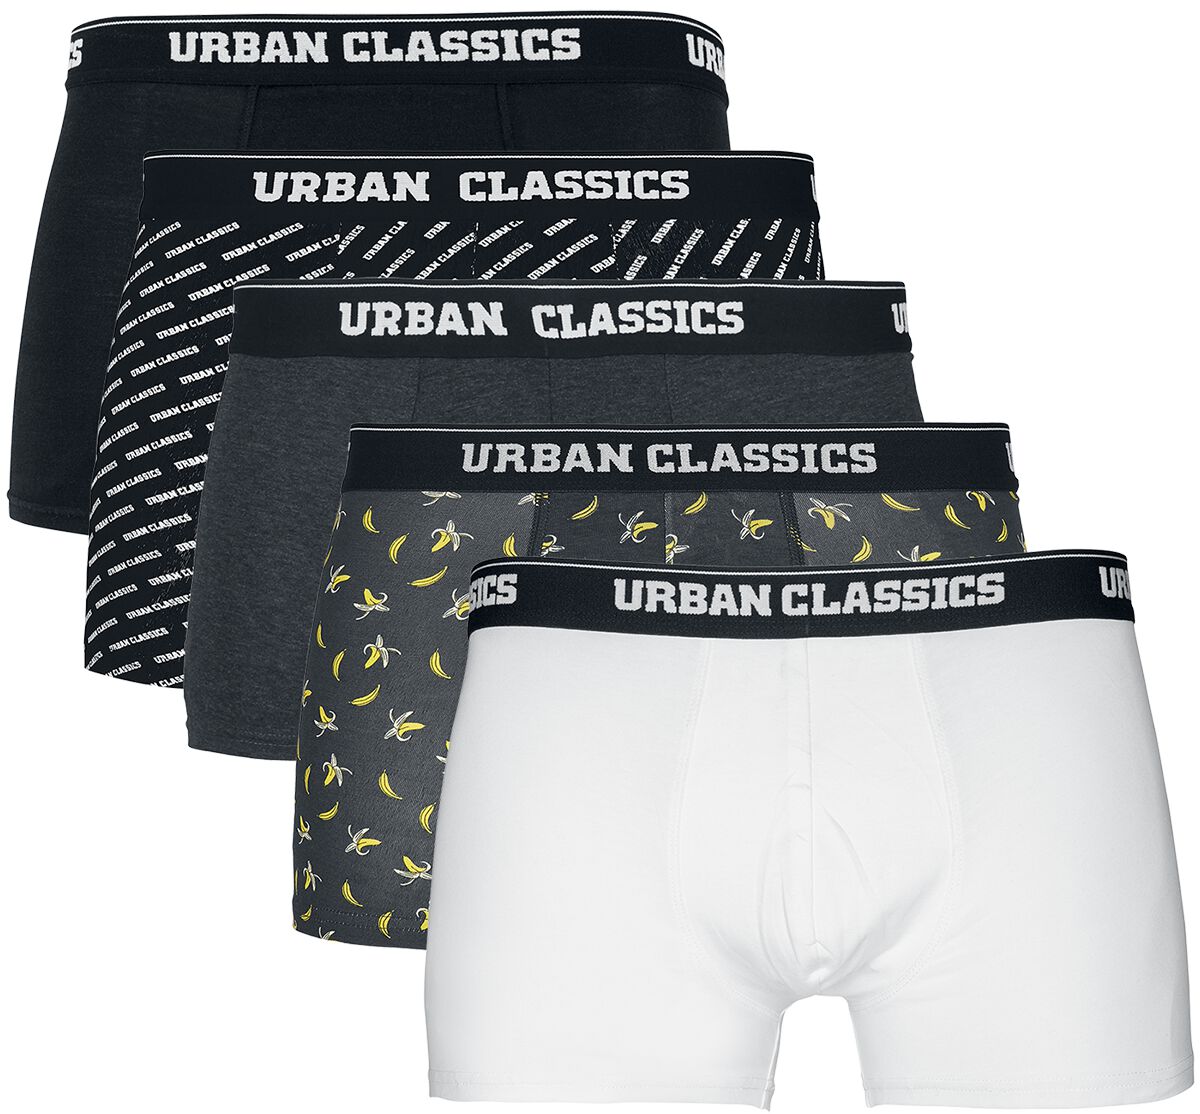 Urban Classics Boxershort-Set - Boxer Shorts 5-Pack - S bis XXL - für Männer - Größe XXL - schwarz/grau/weiß